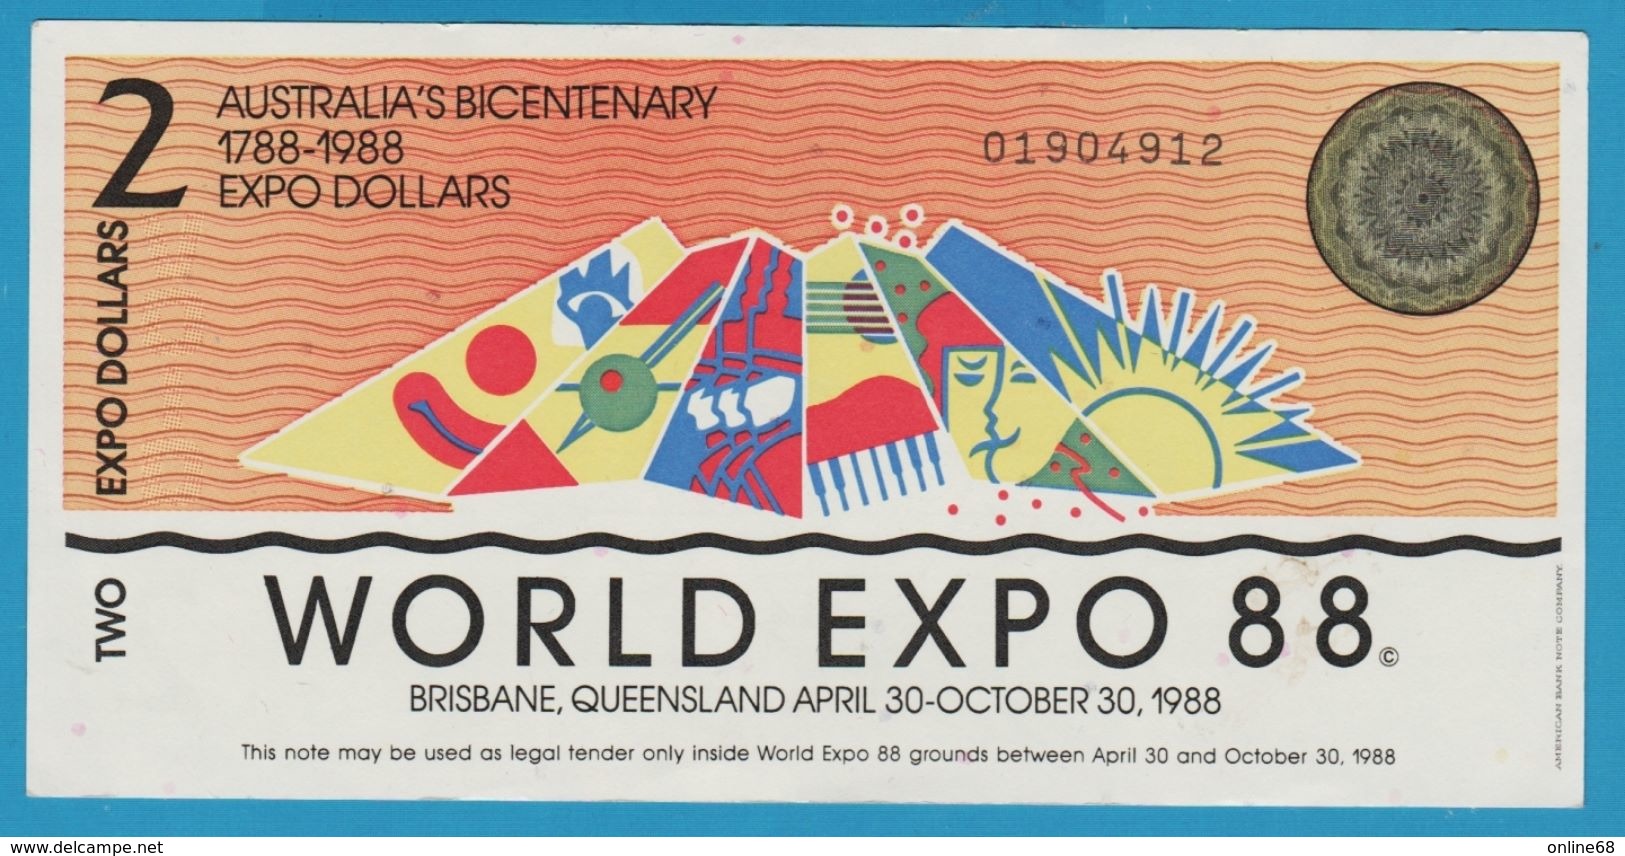 AUSTRALIA 2 EXPO DOLLARS 1788-1988 WORLD EXPO 88 No 01904912 - Fictifs & Specimens